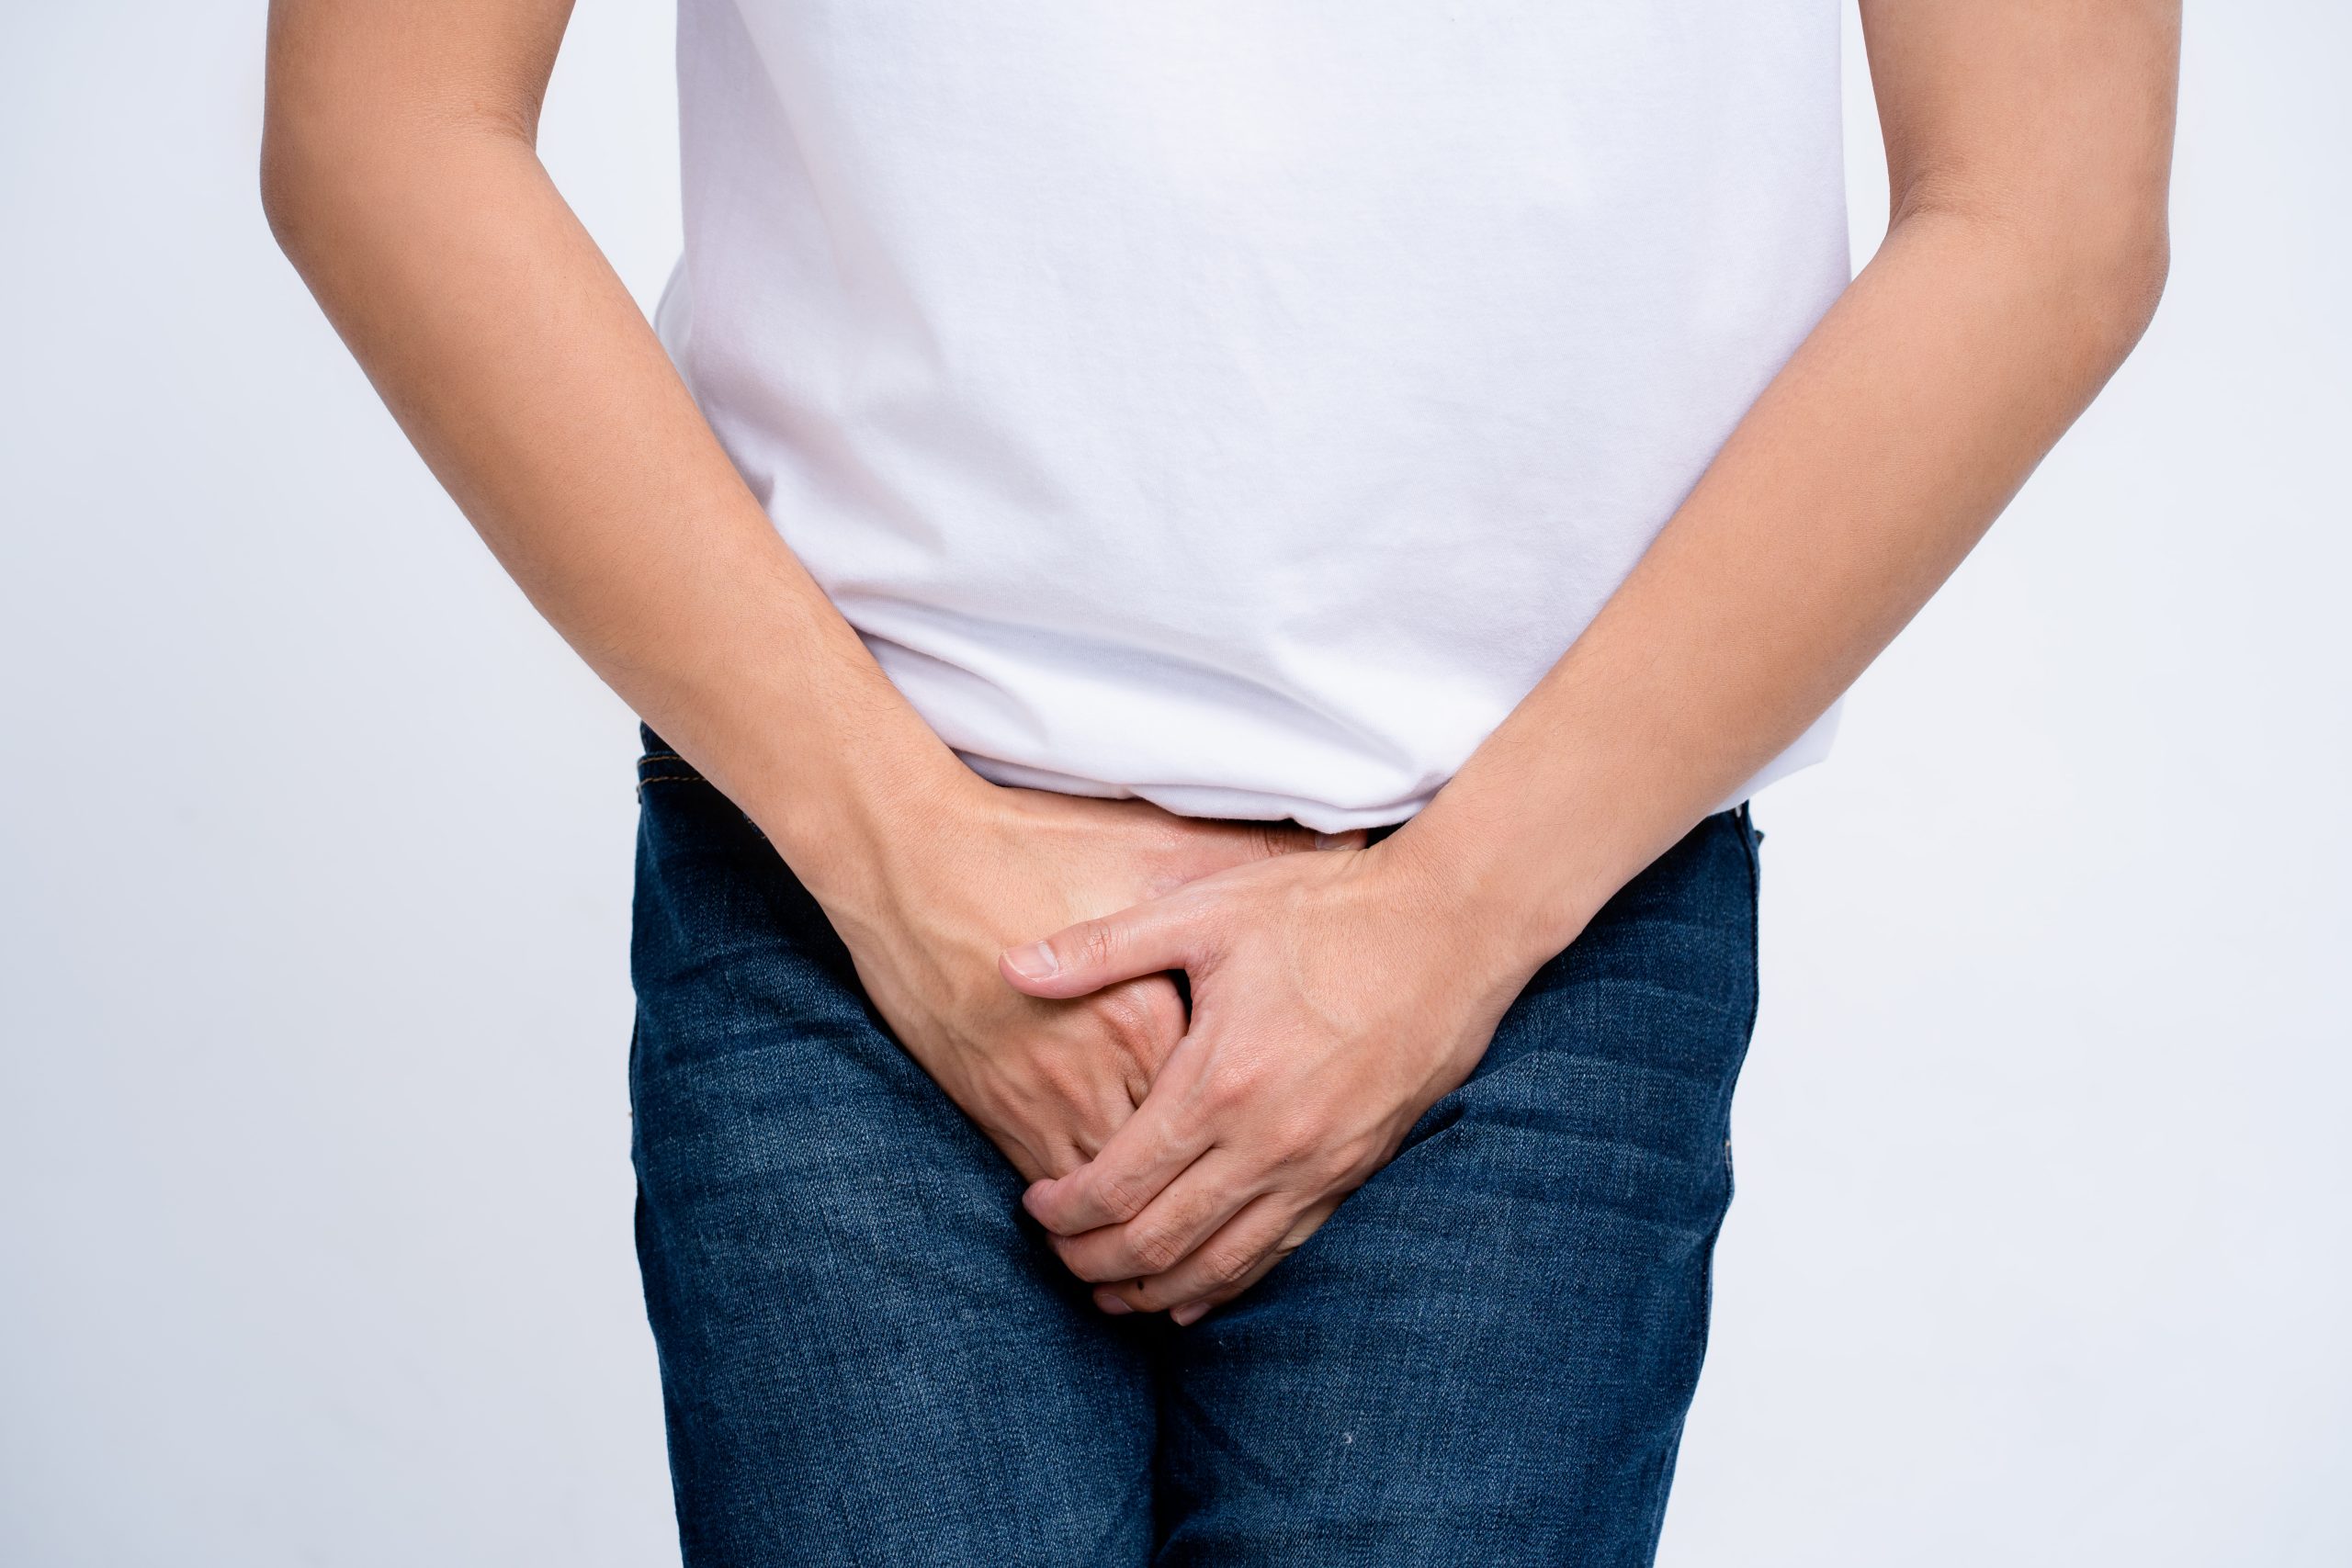 Waarom is Potencialex de beste behandeling voor erectiestoornissen?